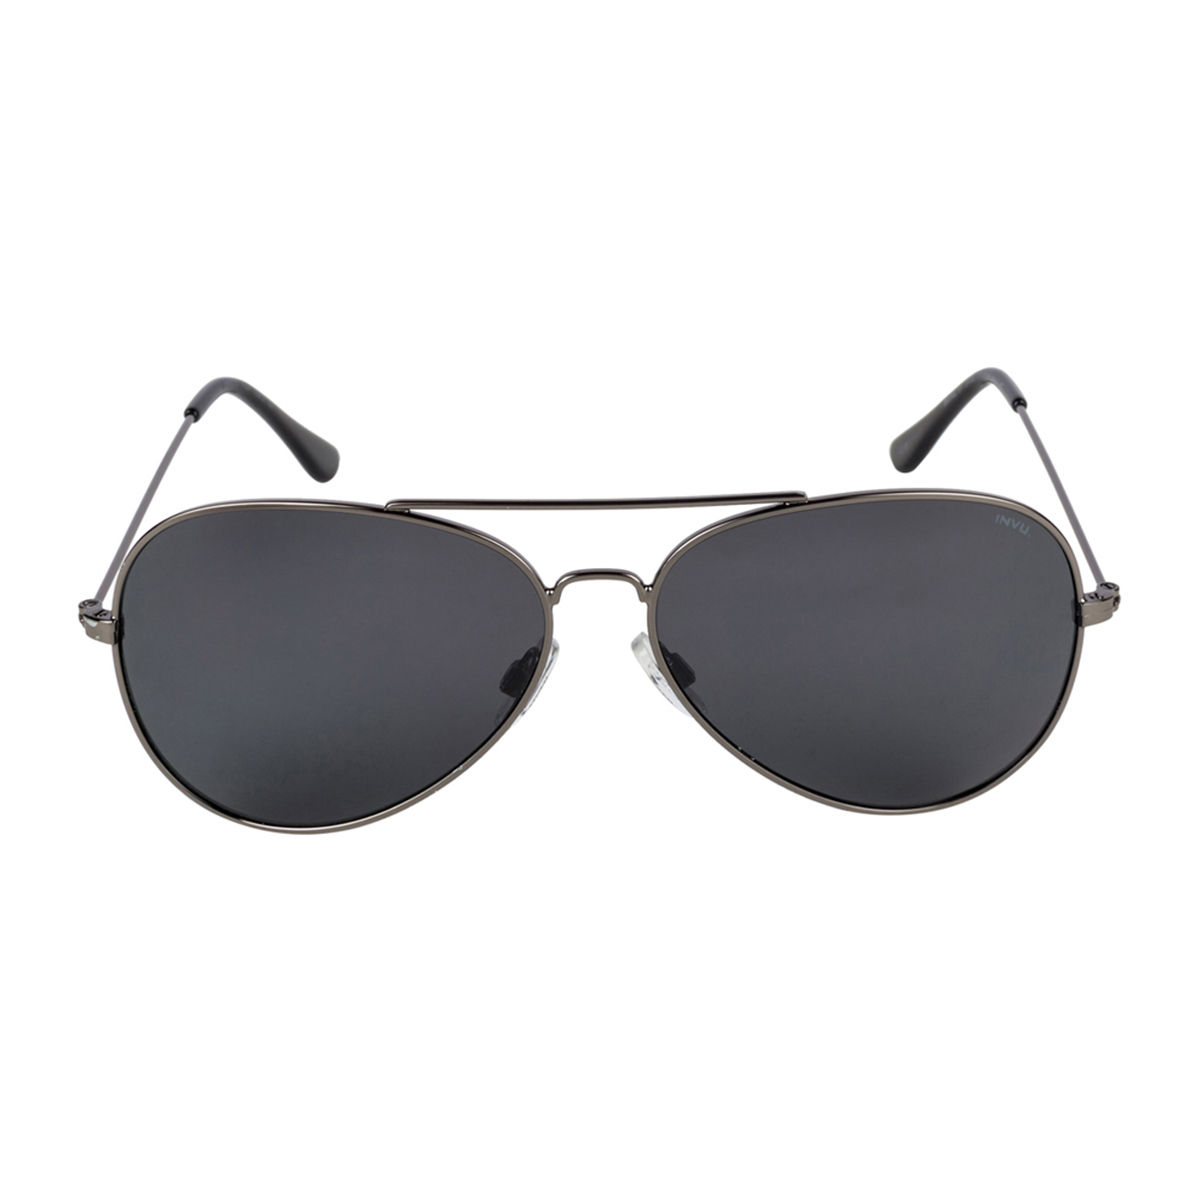 Invu Sunglasses Aviator With Smoke Lens For Men